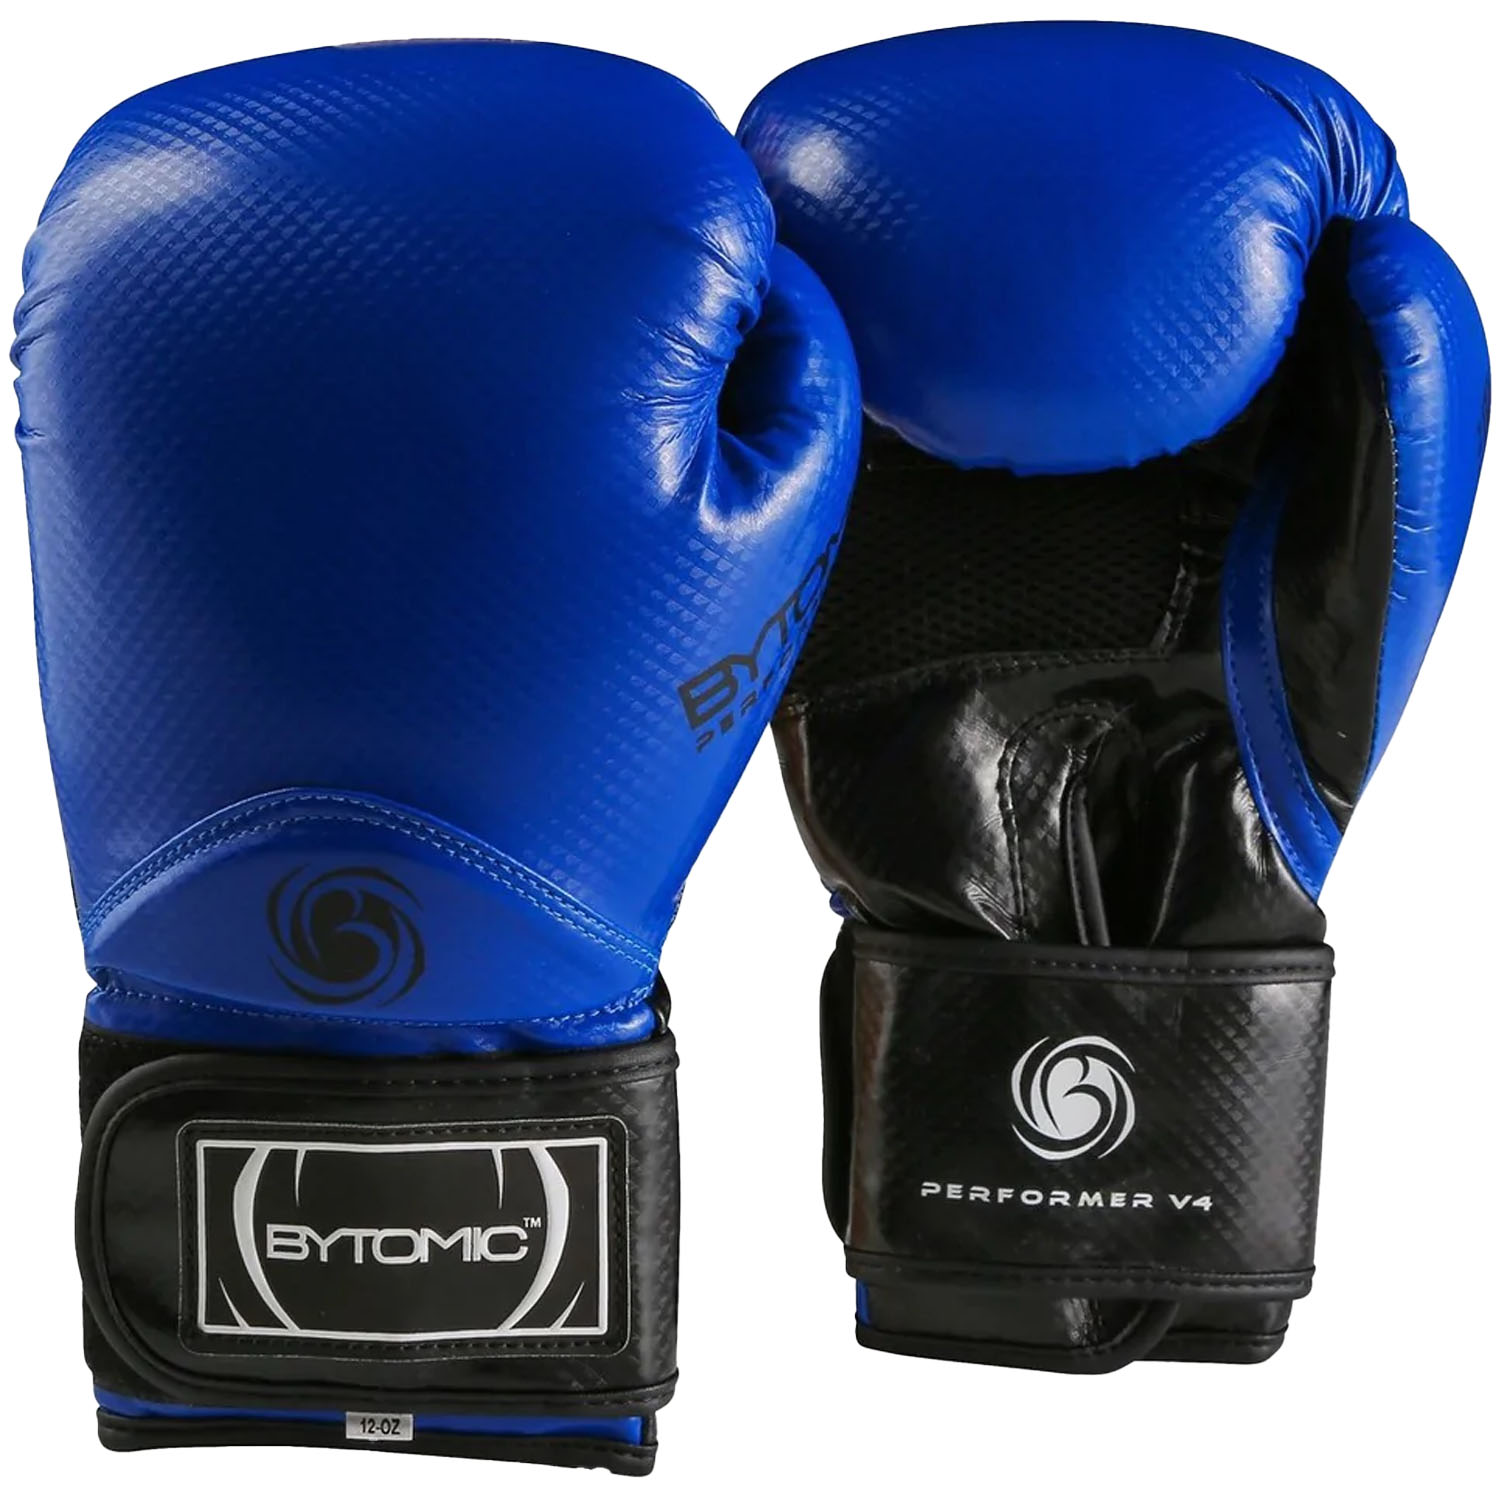 Bytomic Boxing Gloves, Performer, V4, blue, 16 Oz